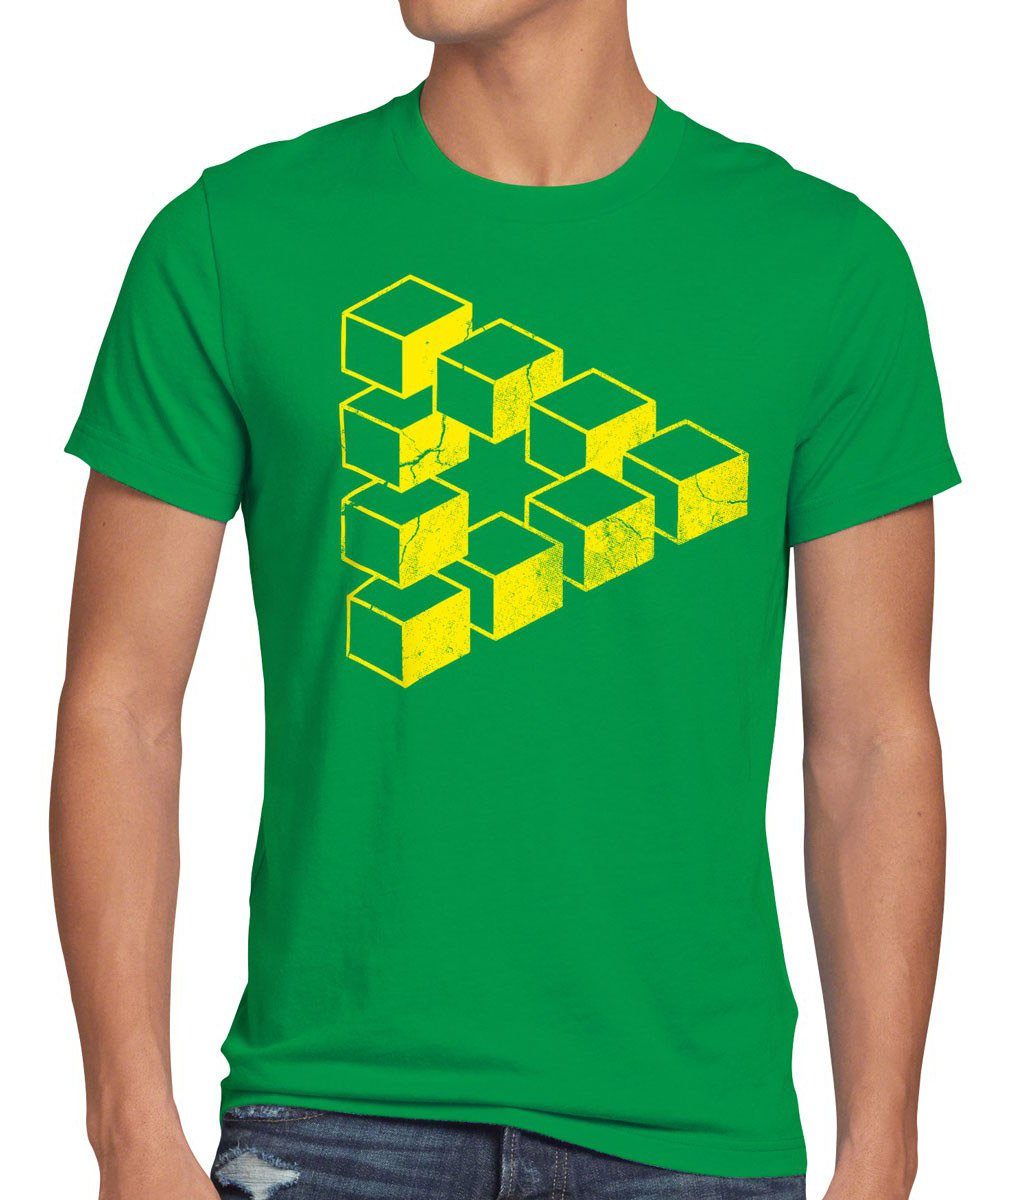 Print-Shirt Dreieck Theory T-Shirt grün Big bang würfel Penrose Cube Herren Cooper Sheldon Escher style3